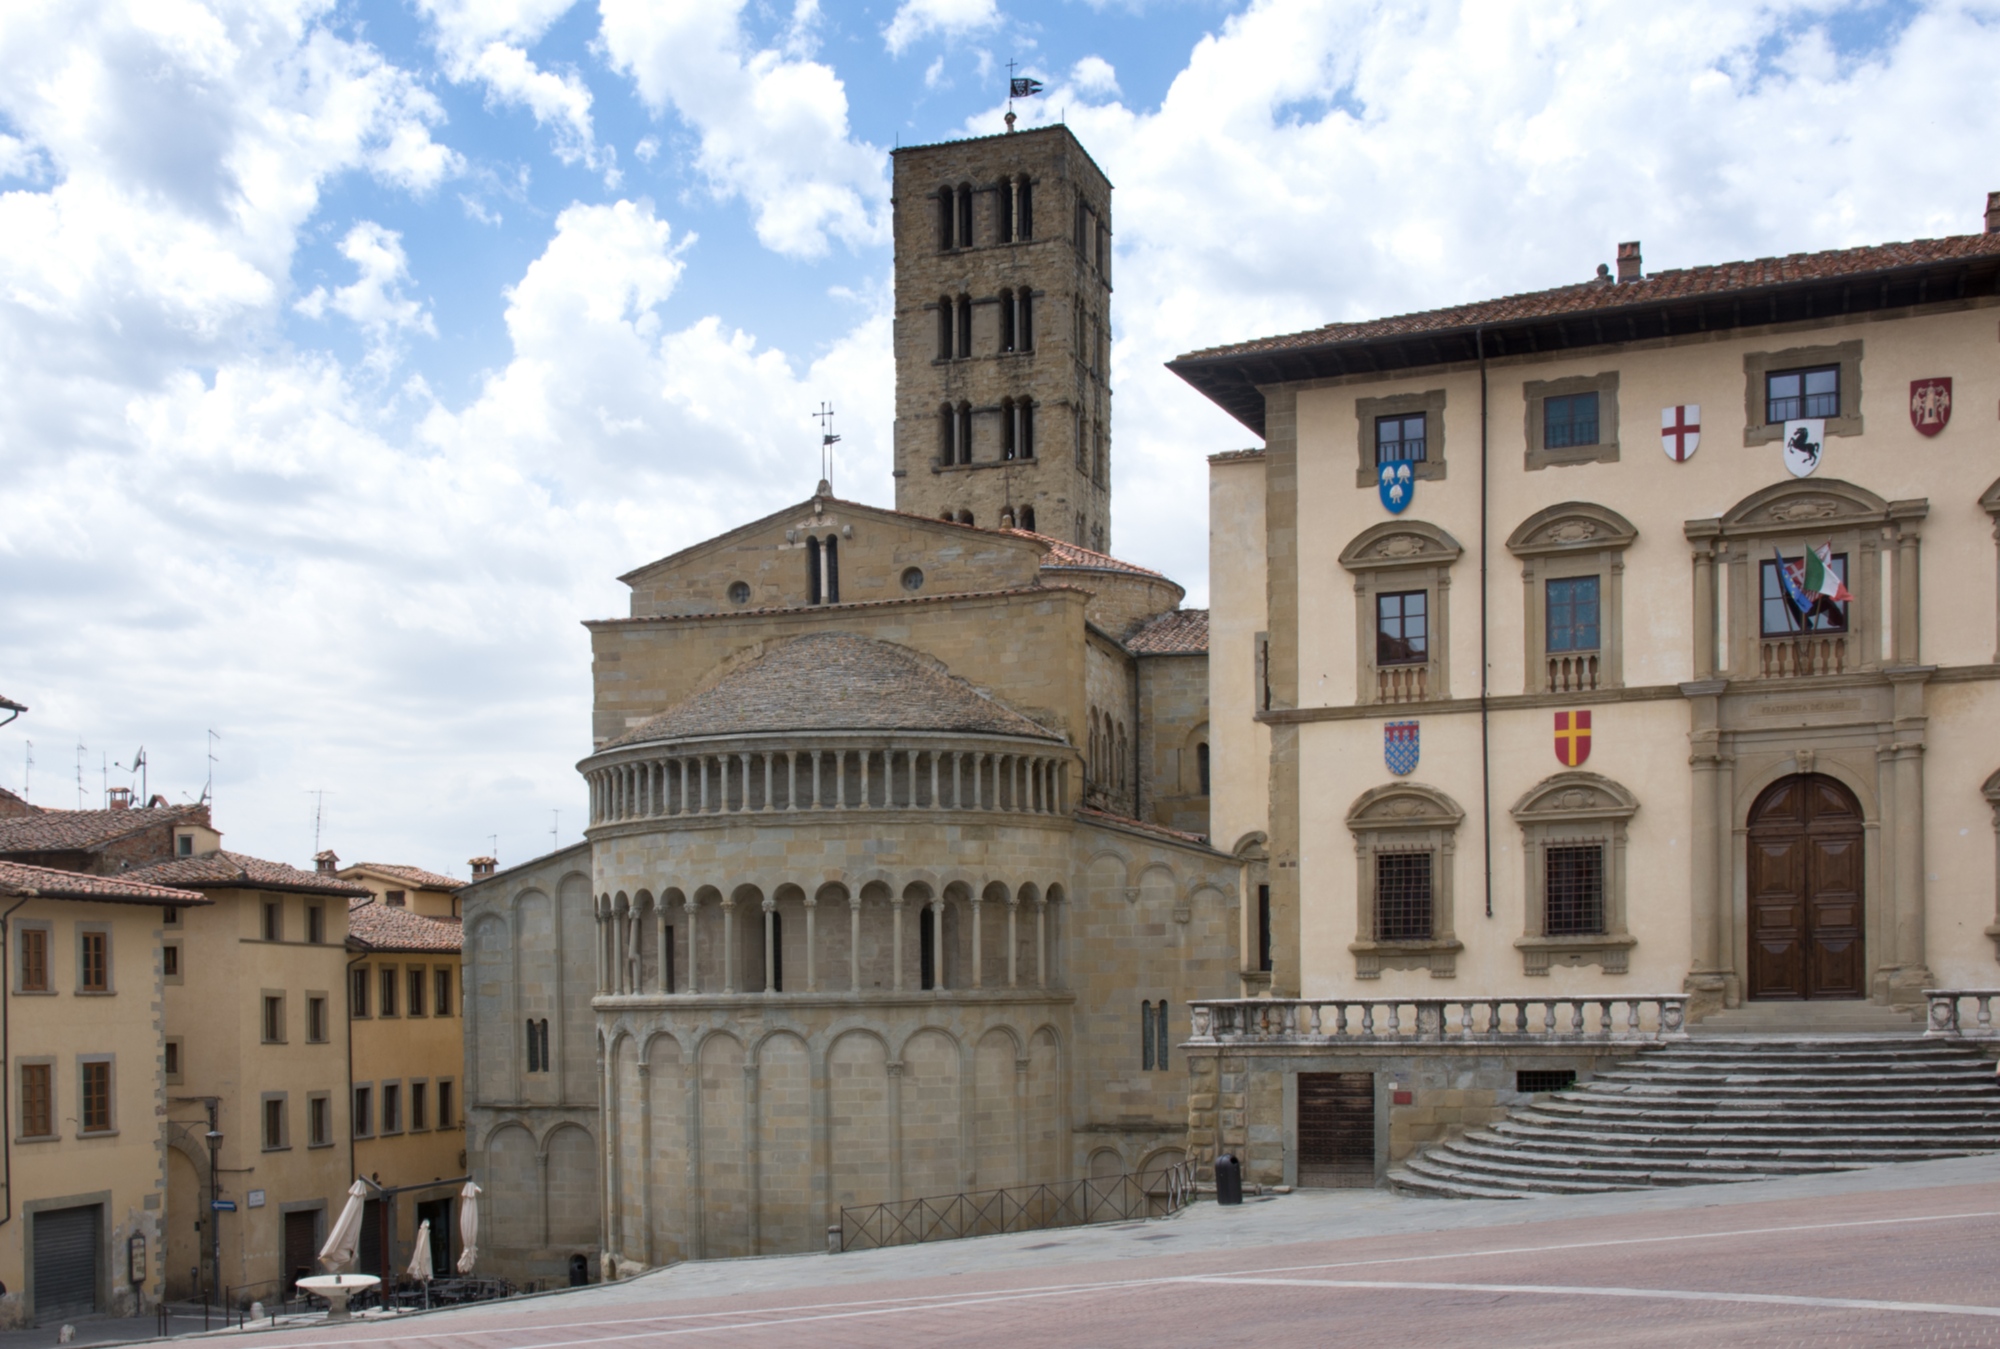 The main square in Arezzo